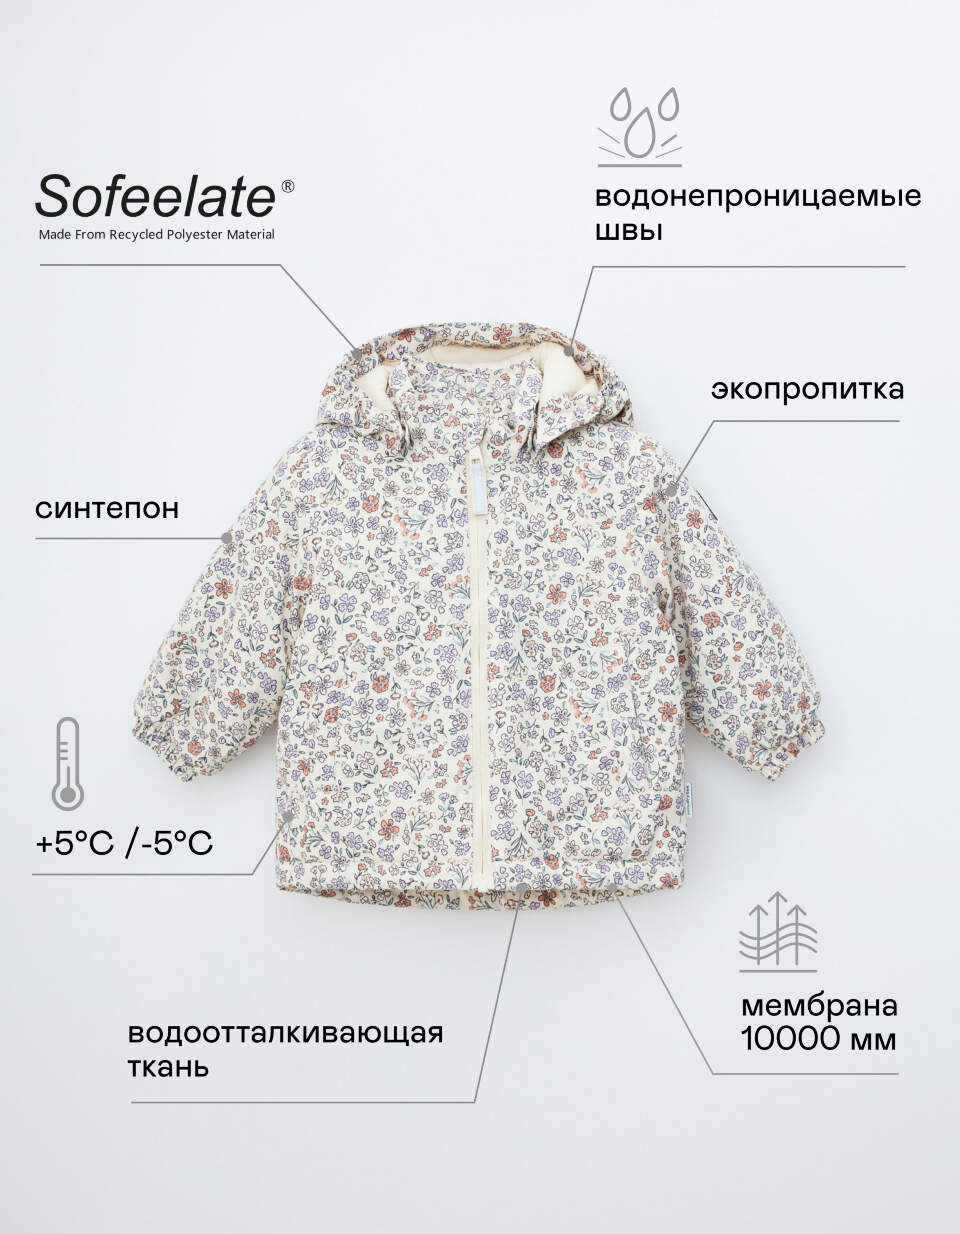 Куртка из технологичной мембраны для малышей